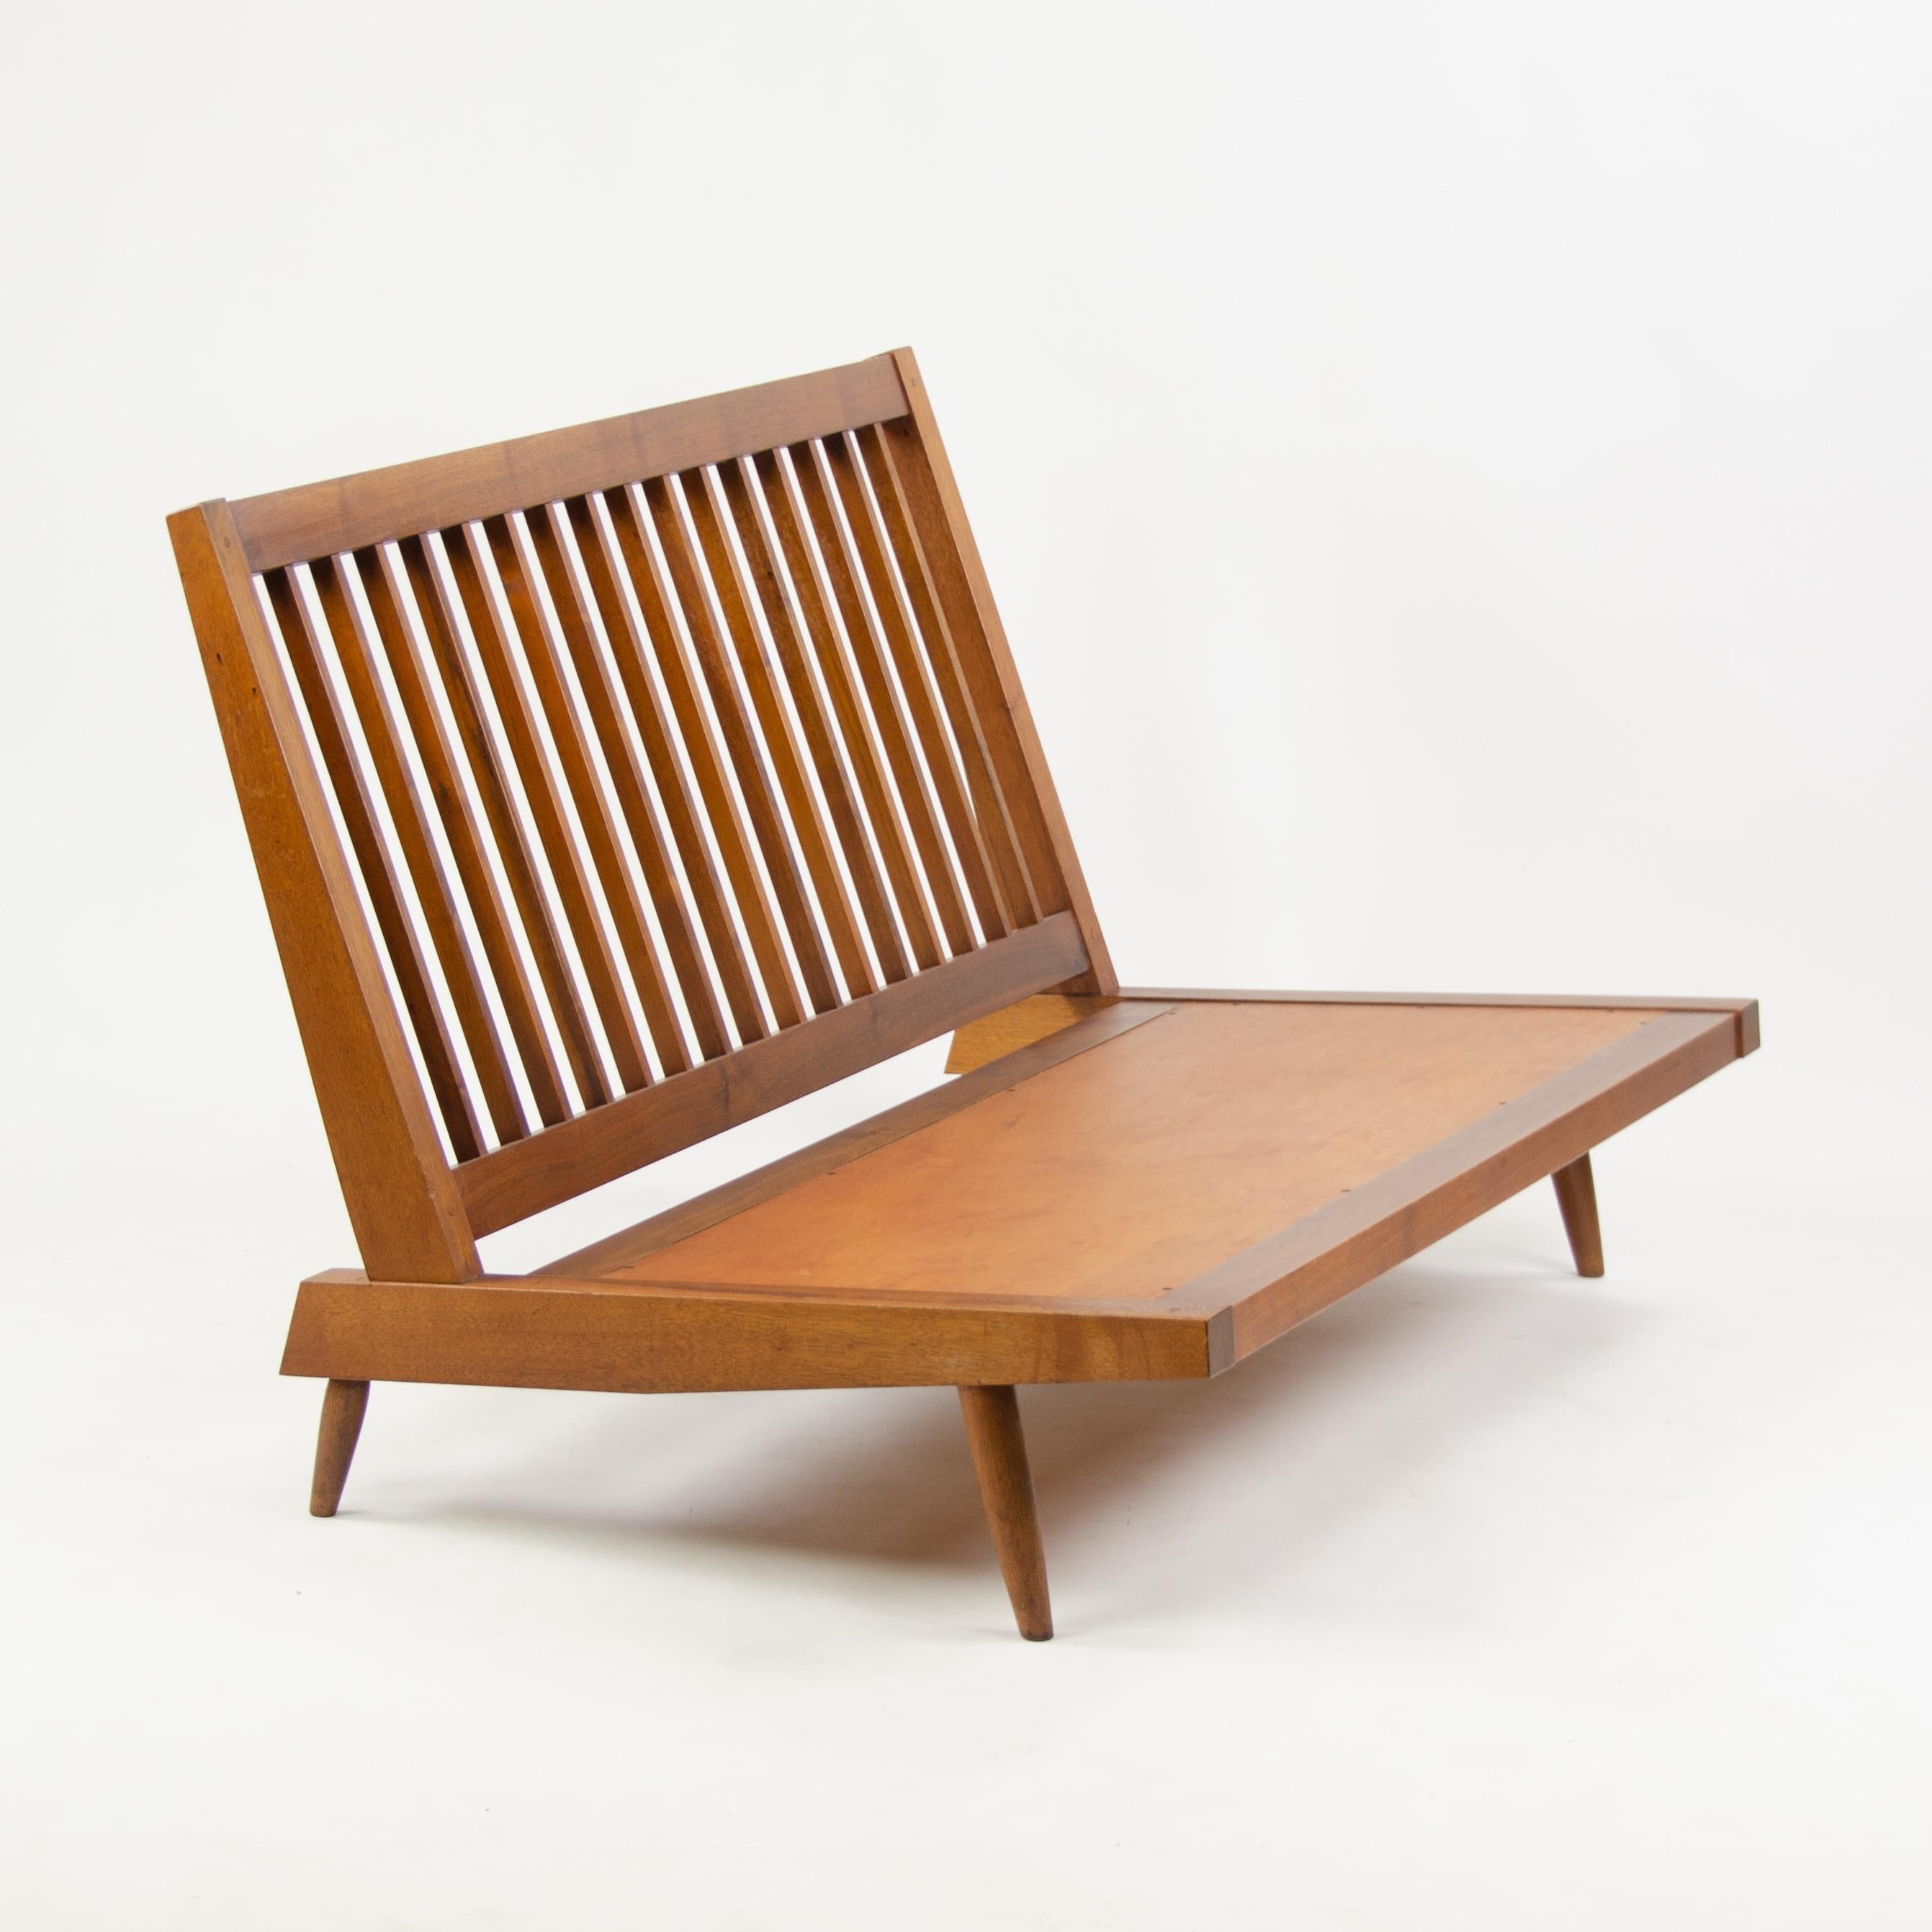 Zum Verkauf steht ein Sofa, das von George Nakashima um 1966 hergestellt wurde. Es handelt sich um ein ikonisches Beispiel für die Lattenrostserie, deren Formensprache sich sowohl in langen Sofas als auch in schlankeren Loungesesseln